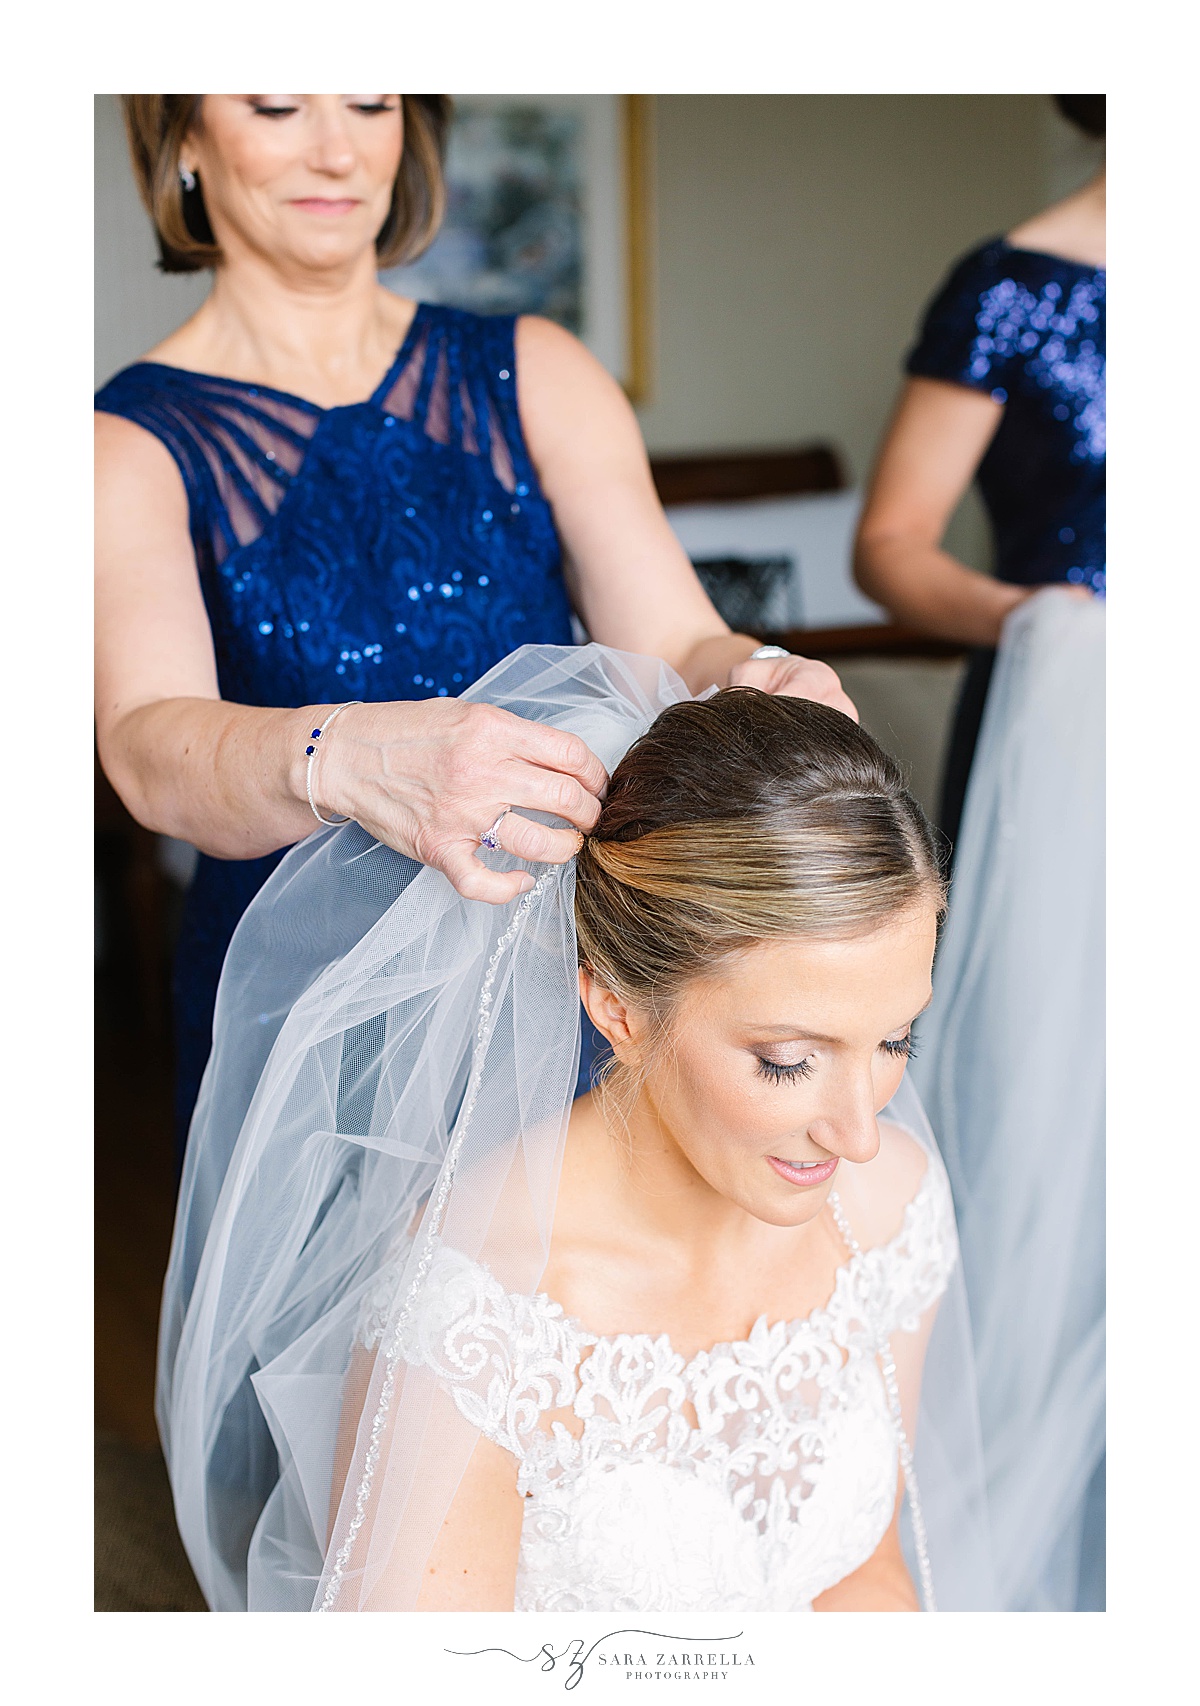 bridesmaid places veil on bride's head